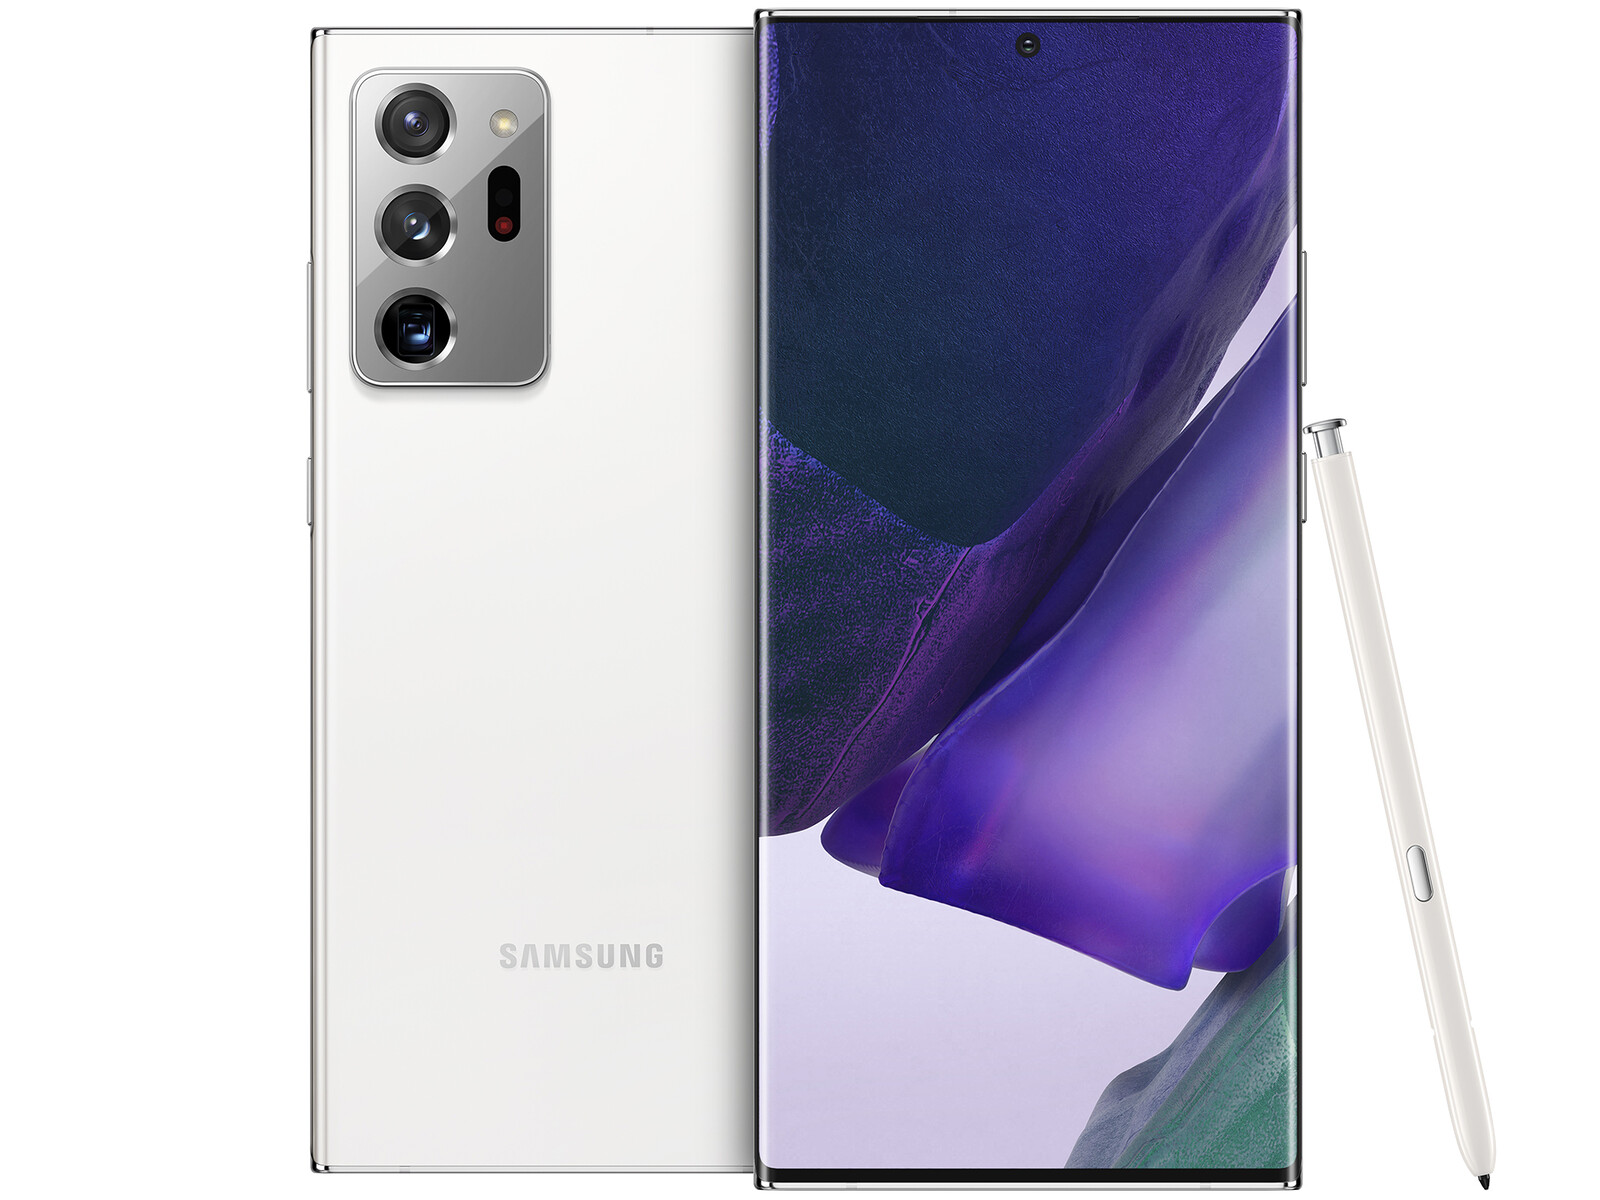 Cùng trải nghiệm Samsung Galaxy Note20 Ultra - chiếc điện thoại thông minh đẳng cấp với thiết kế sang trọng, camera đỉnh cao và sức mạnh tuyệt vời để đáp ứng mọi nhu cầu của bạn.